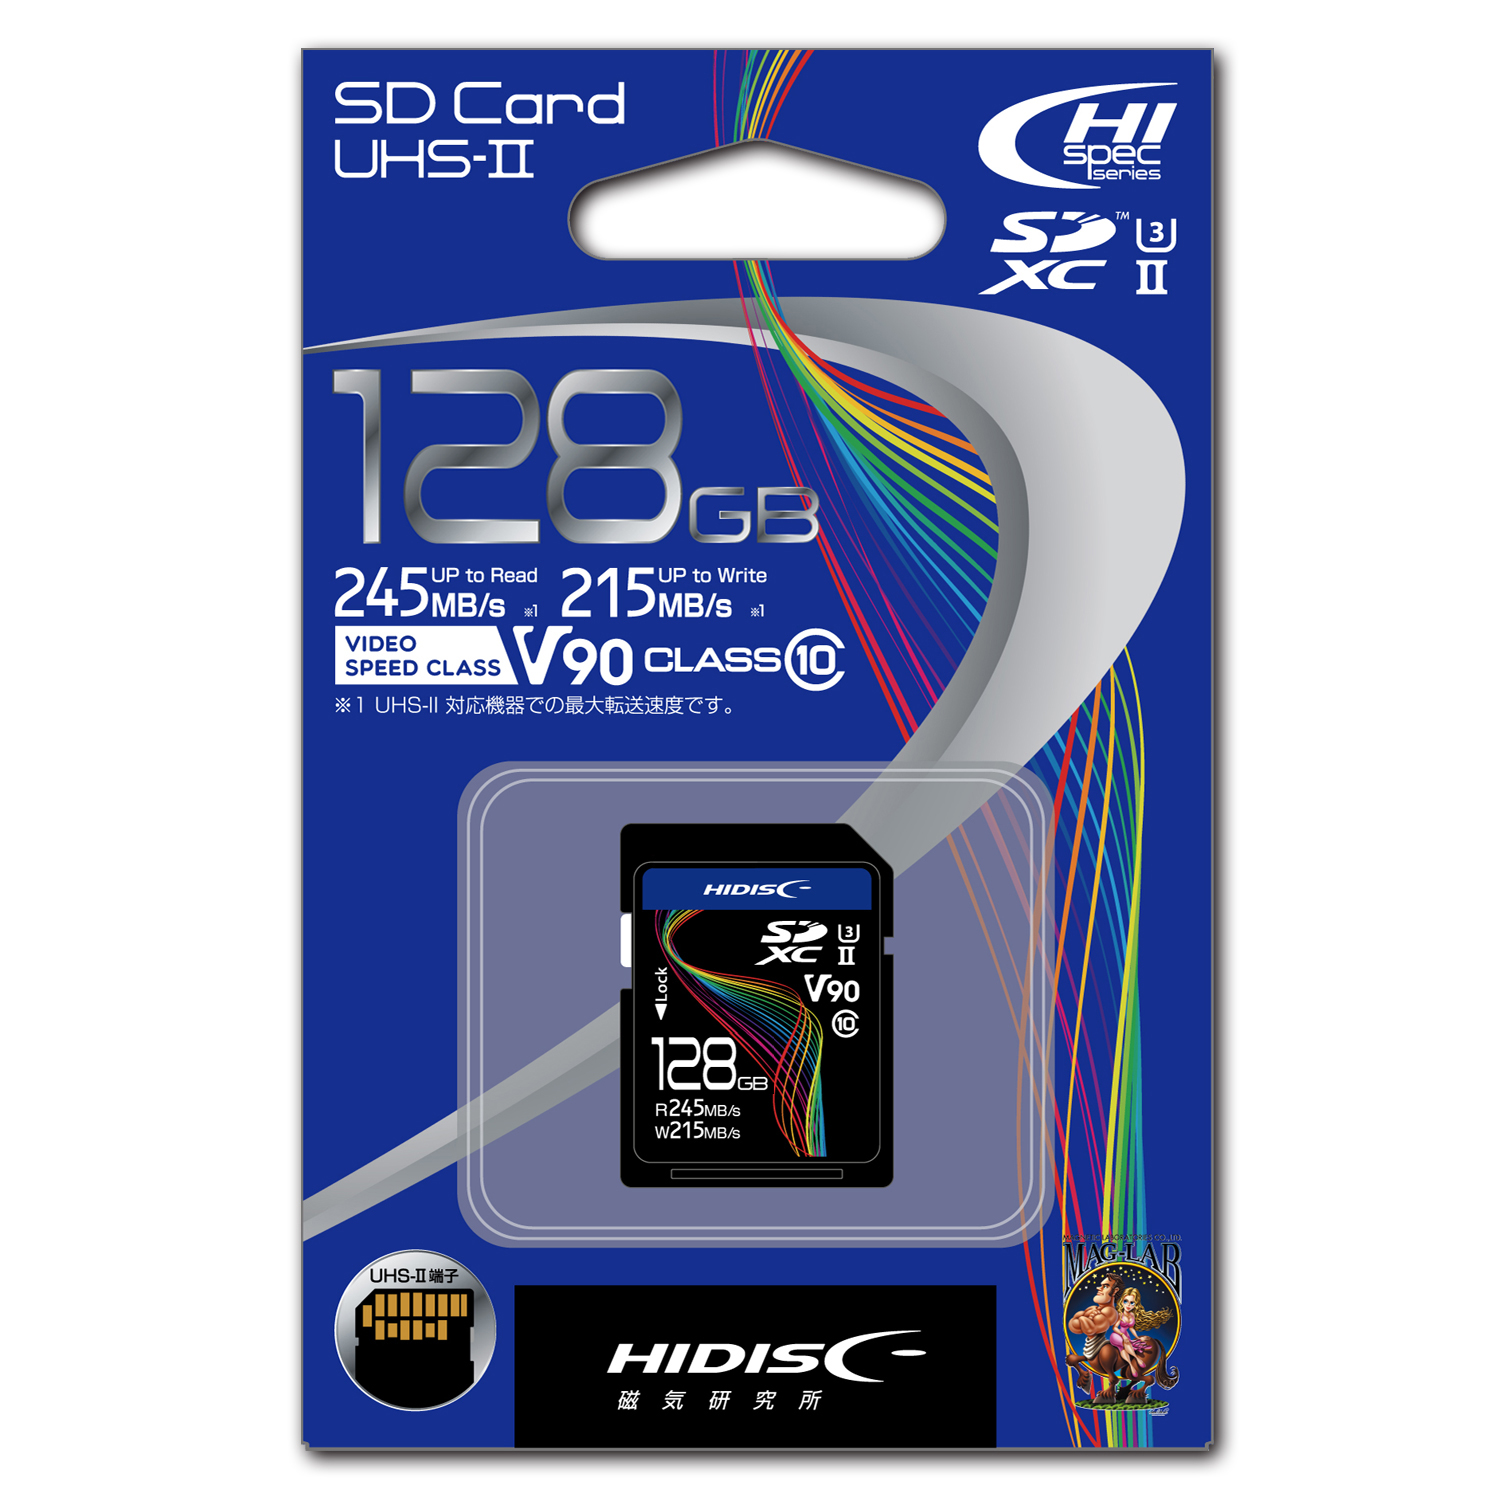 HIDISC 超高速SDXCカード 128GB CLASS10 UHS-II, U3, V90対応 HDSDX128GCL10U3JP3V90